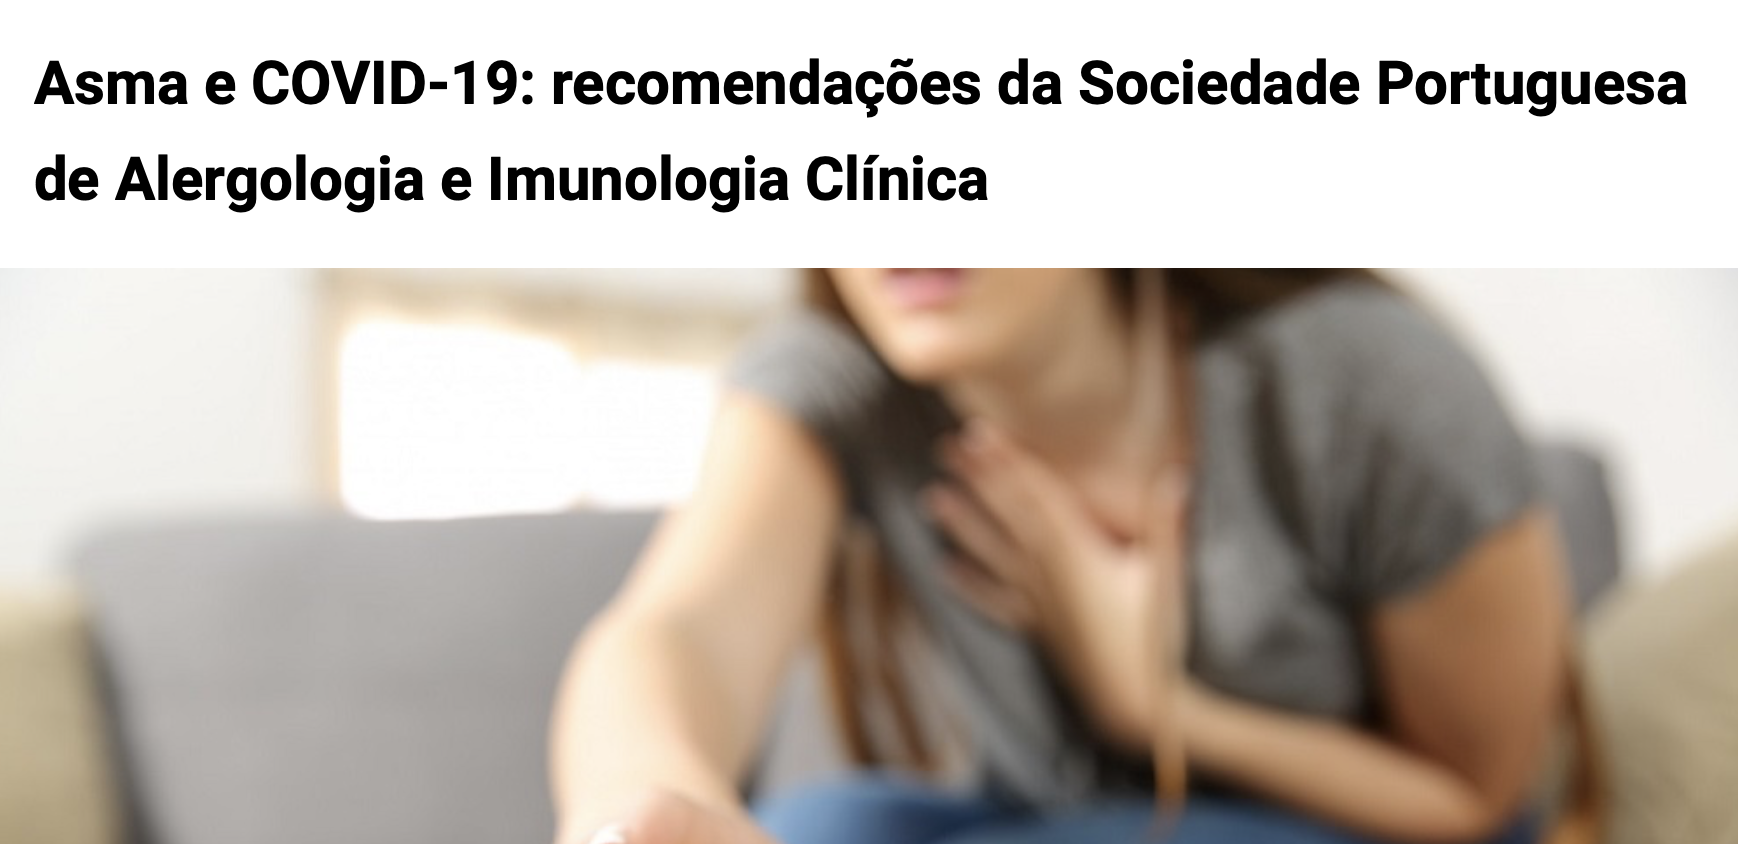 Asma e COVID-19: recomendações da Sociedade Portuguesa de Alergologia e Imunologia Clínica